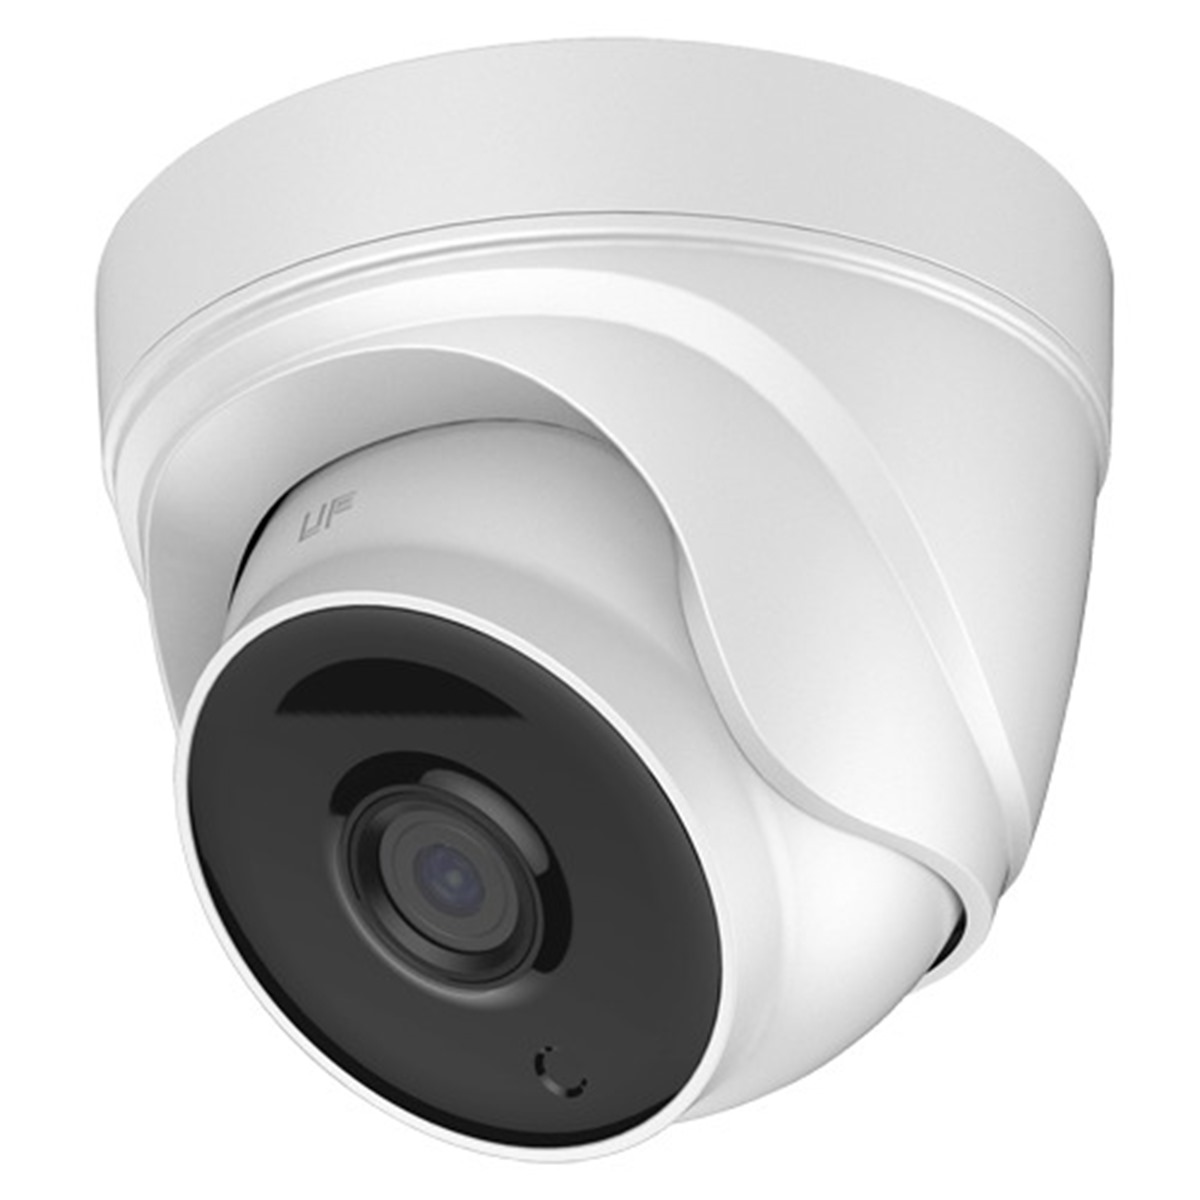 Ip видеокамера. Камера IP wx02. Bascom видеорегистратор Dome Camera. AHD Camera Hikvision внутренние. IP камера значок.